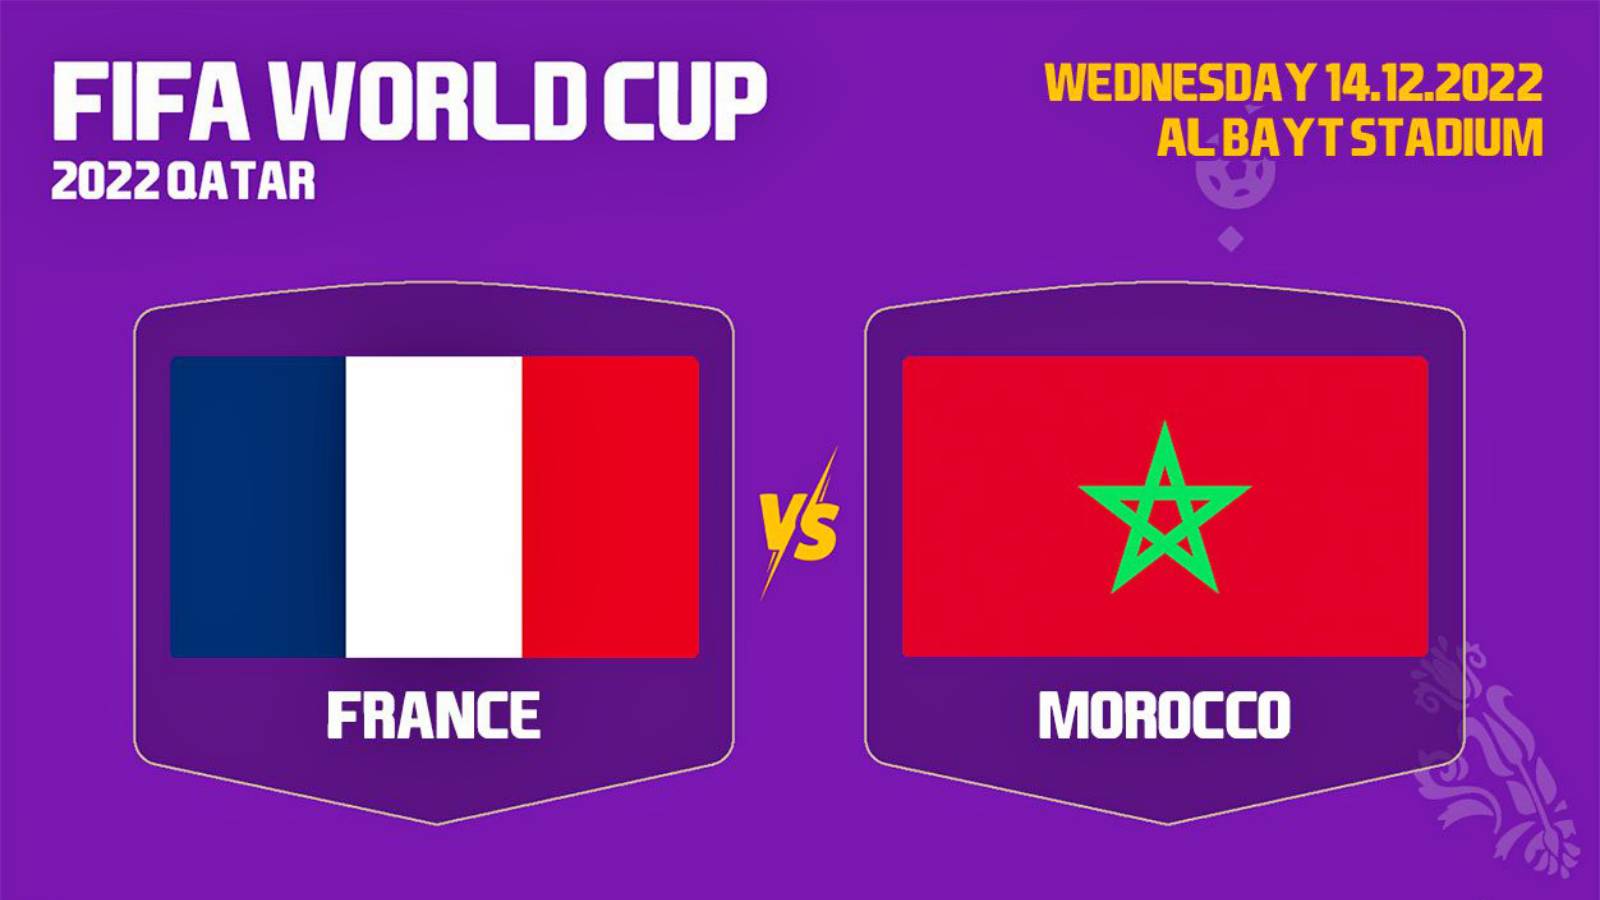 FRANKRIKE - MAROCKO LIVE TVR 1 VM 2022 QATAR